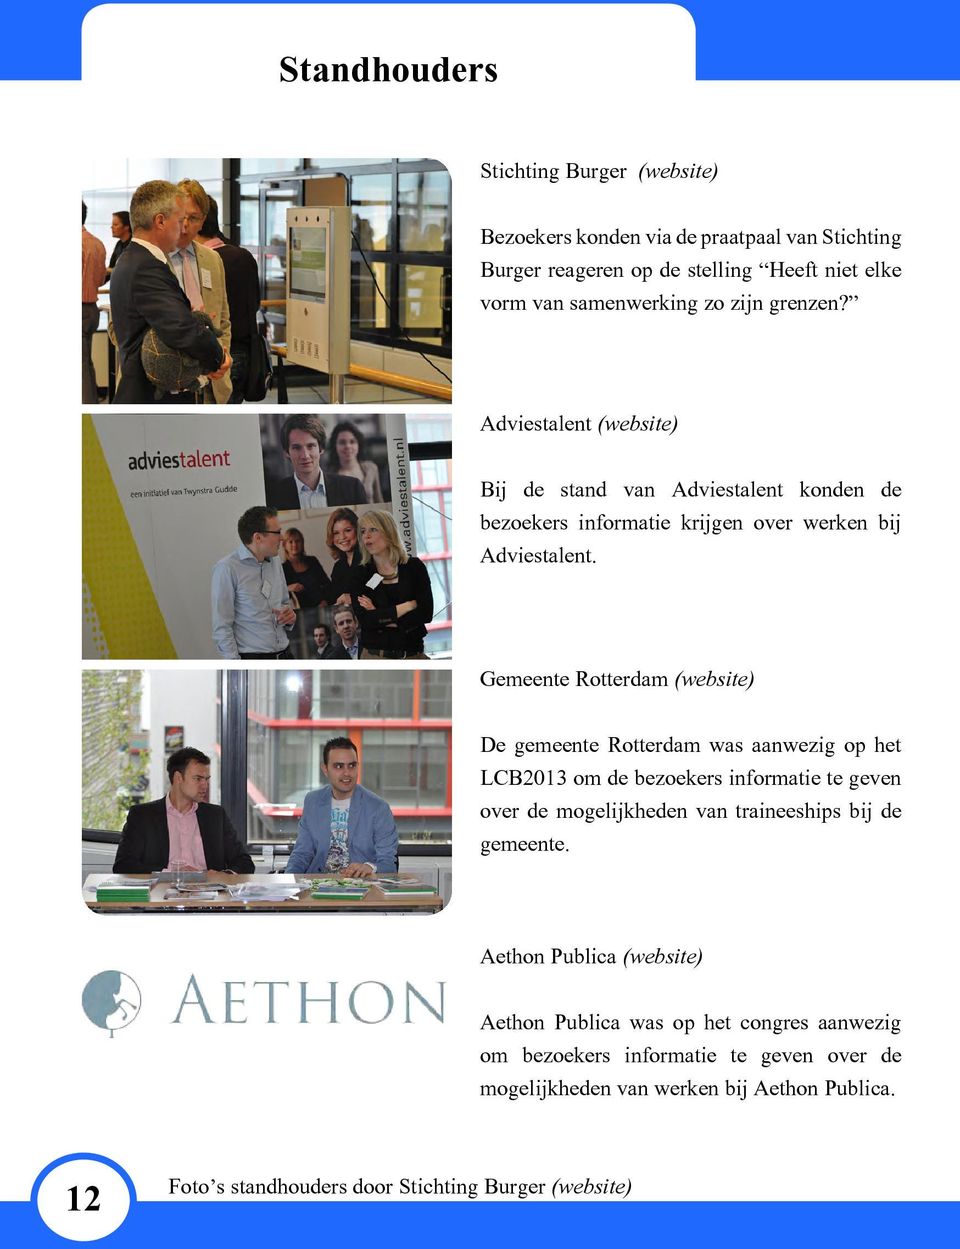 Gemeente Rotterdam (website) De gemeente Rotterdam was aanwezig op het LCB2013 om de bezoekers informatie te geven over de mogelijkheden van traineeships bij de